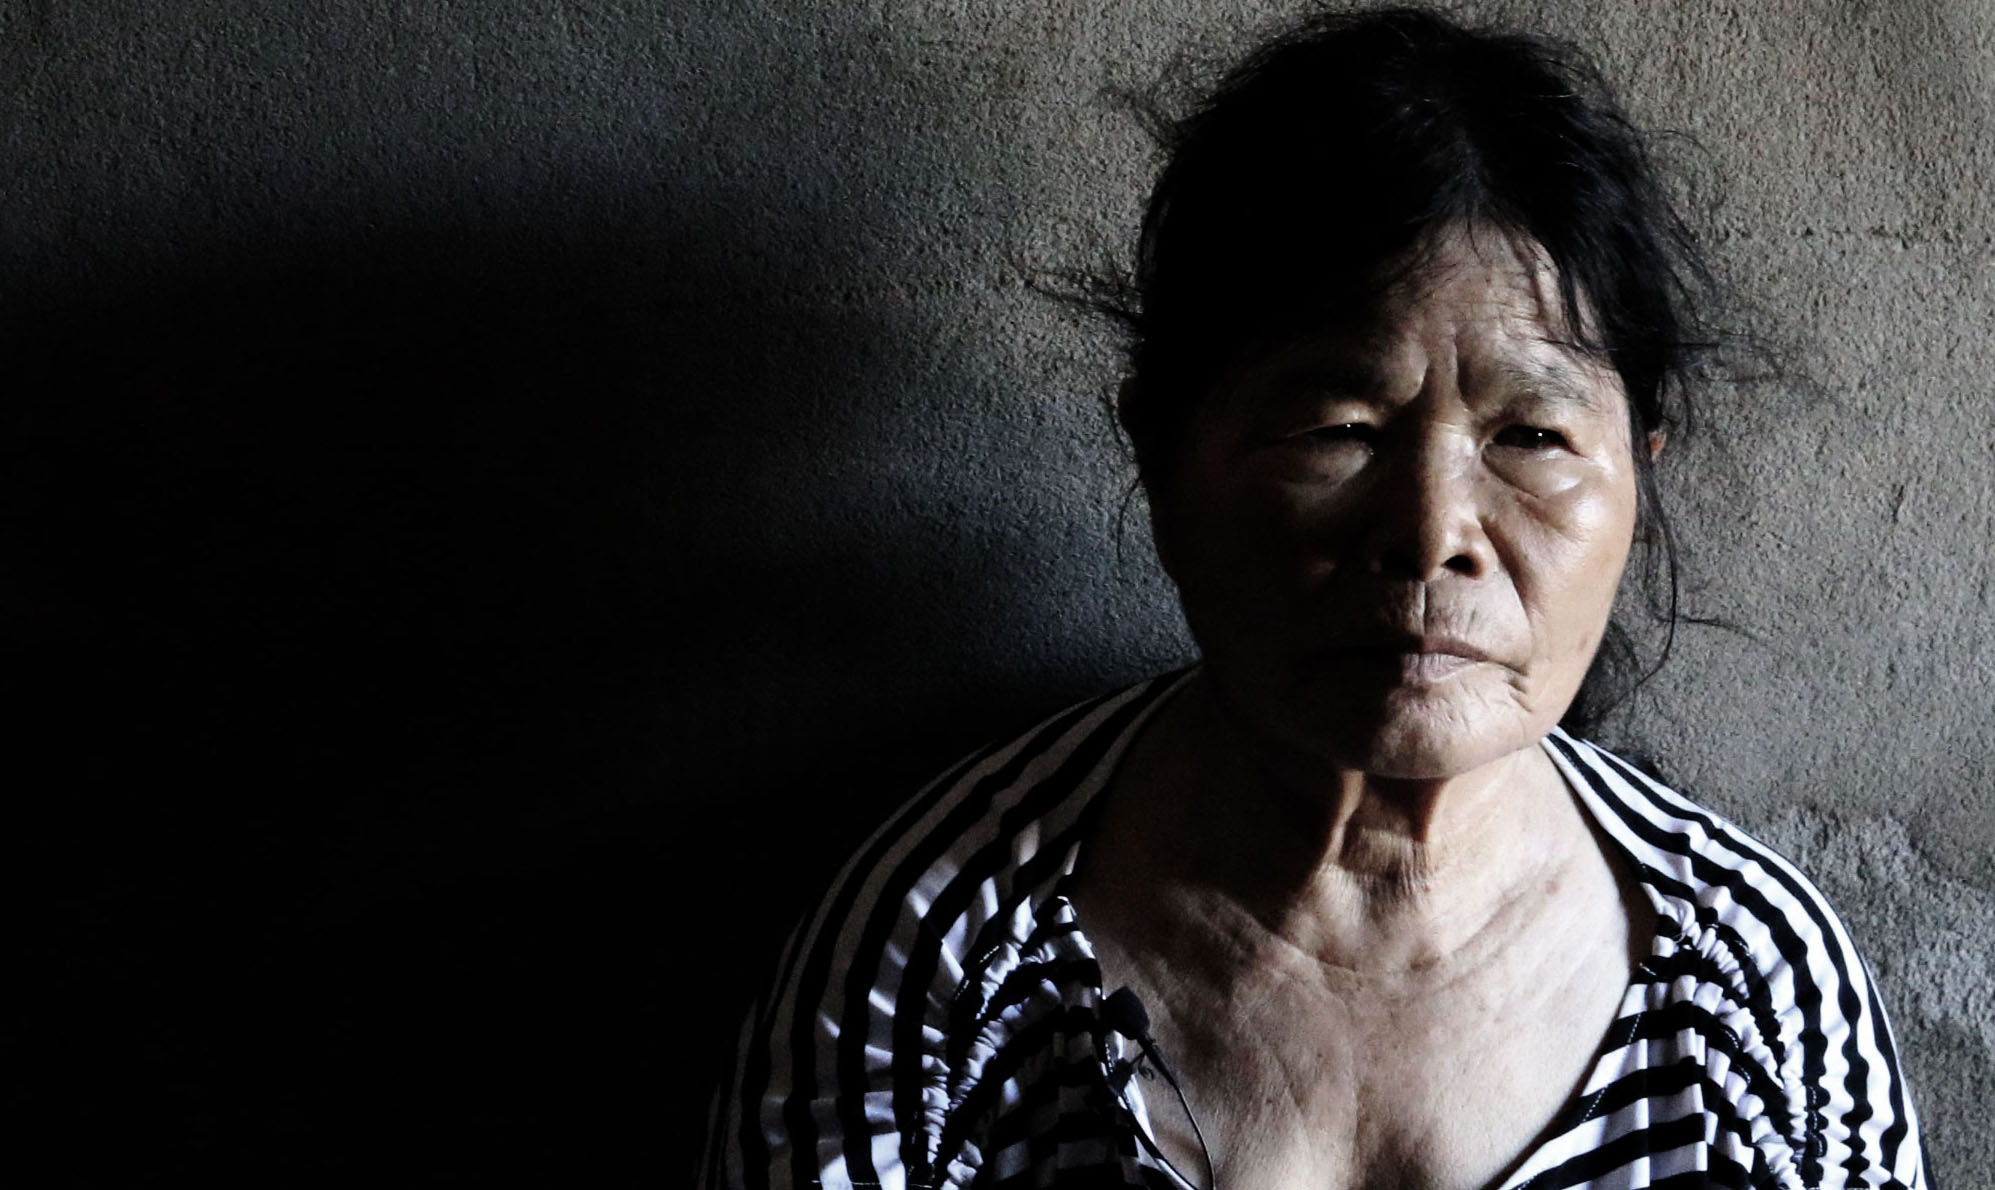 Des milliers de femmes vietnamiennes ont été violées par des soldats sud-coréens pendant la guerre du Vietnam. (Source : Vietnamvoices)